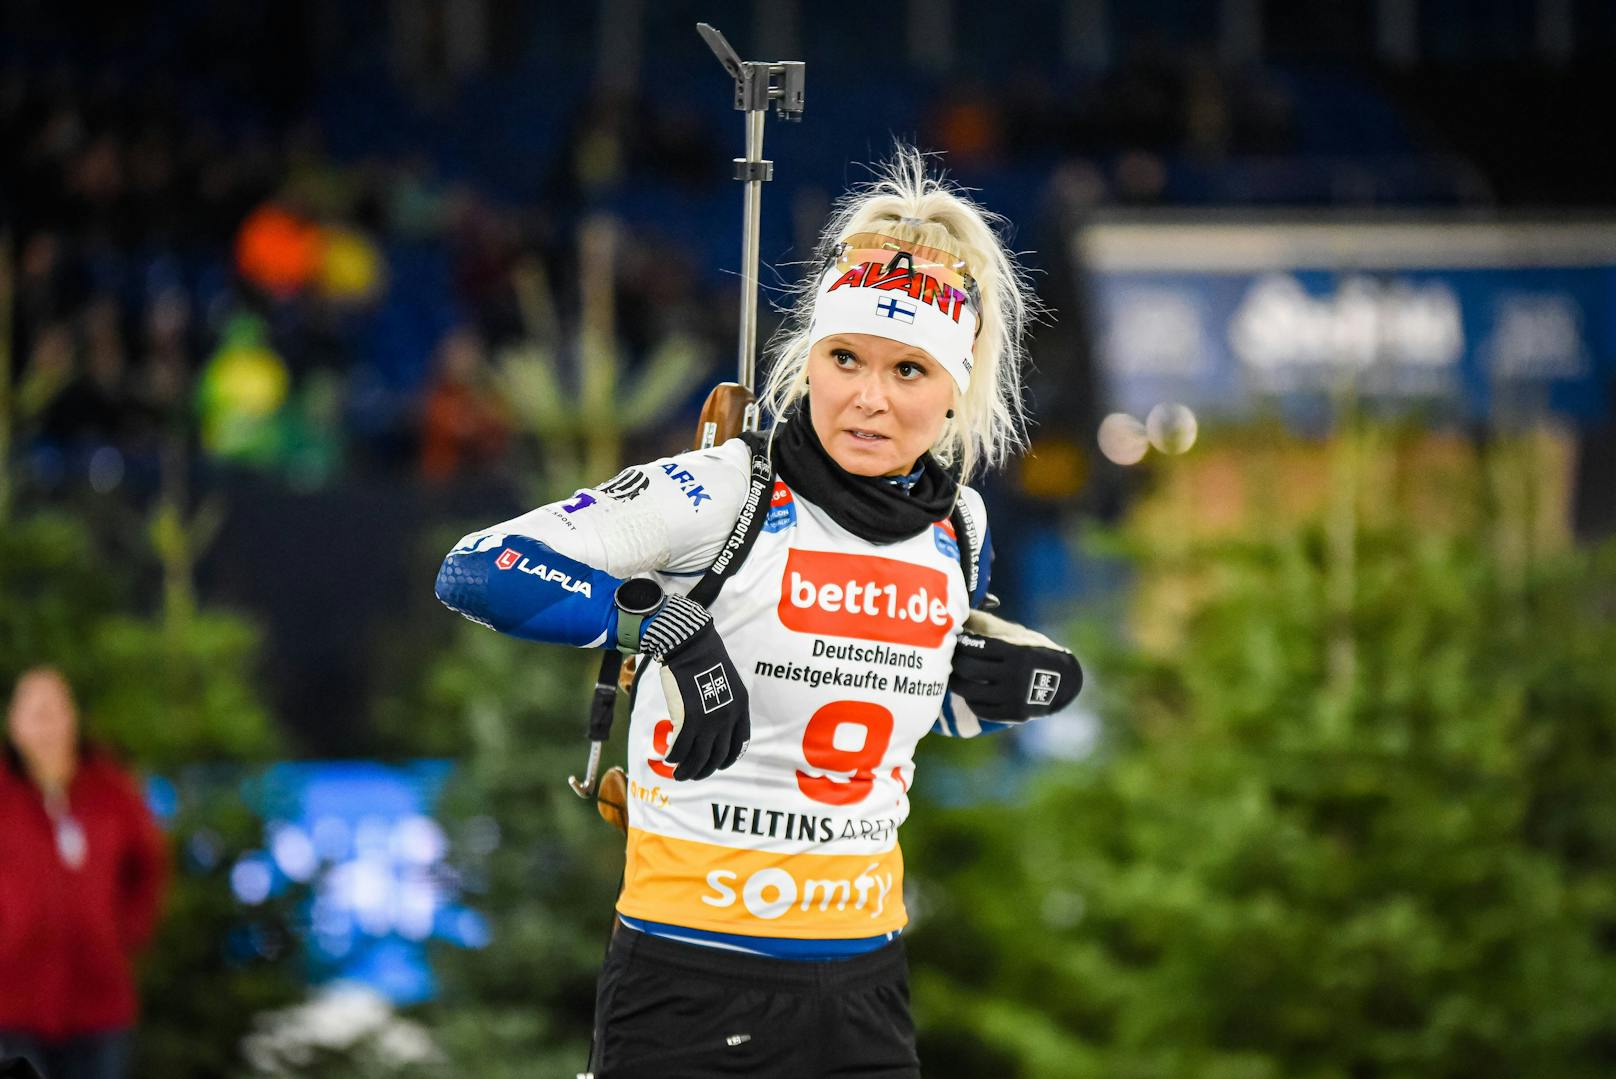 Herzprobleme: Biathlon-Star erklärt ihr Karriere-Aus